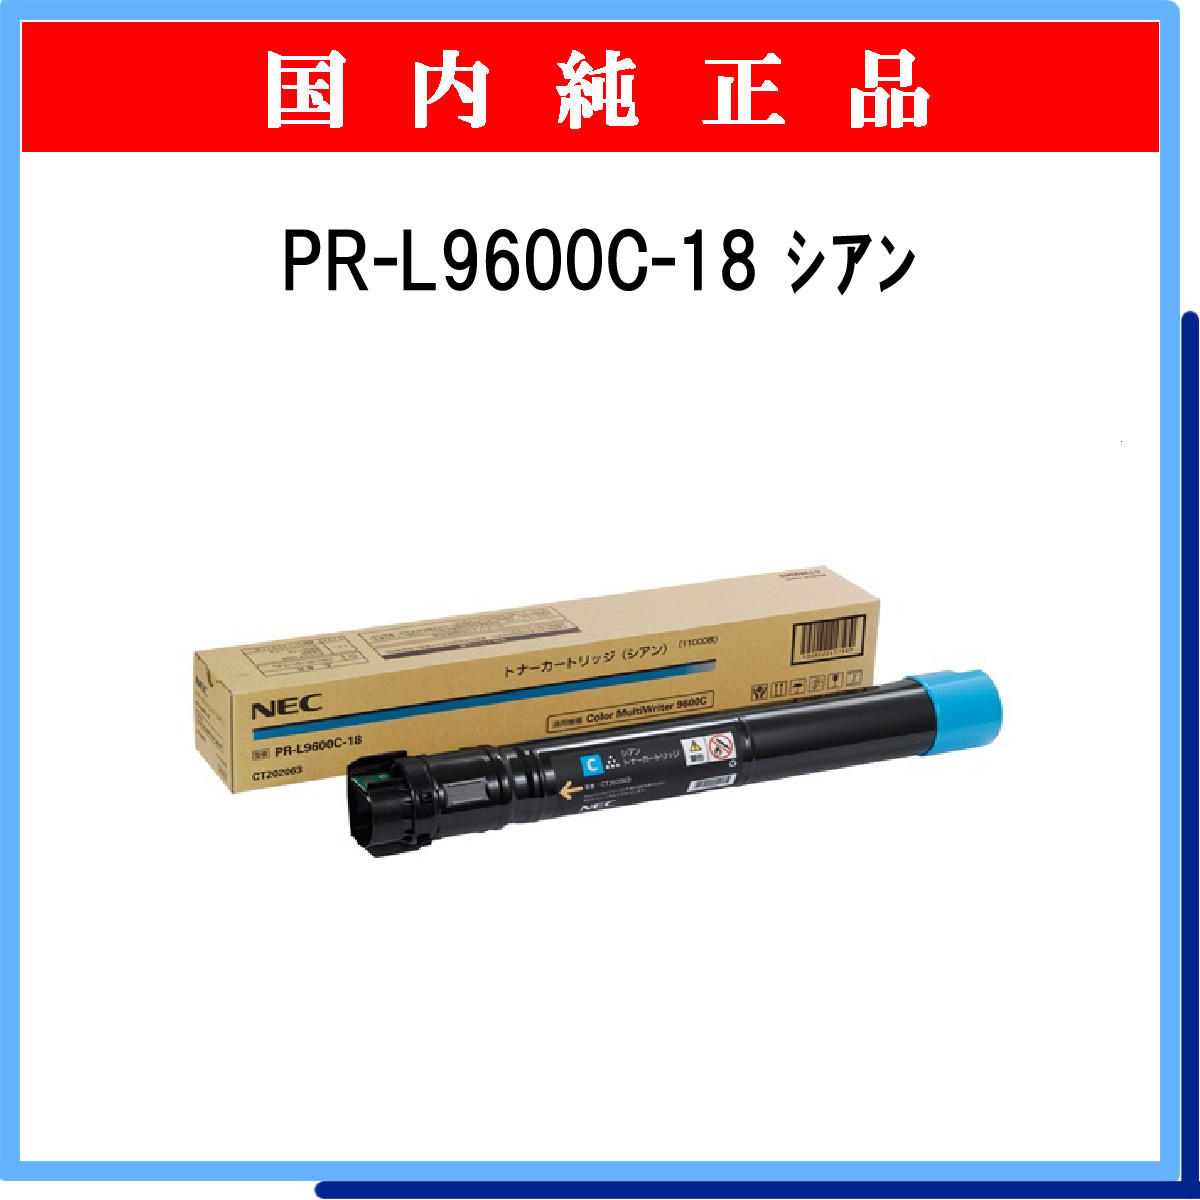 PR-L9600C-18 (大容量) 純正